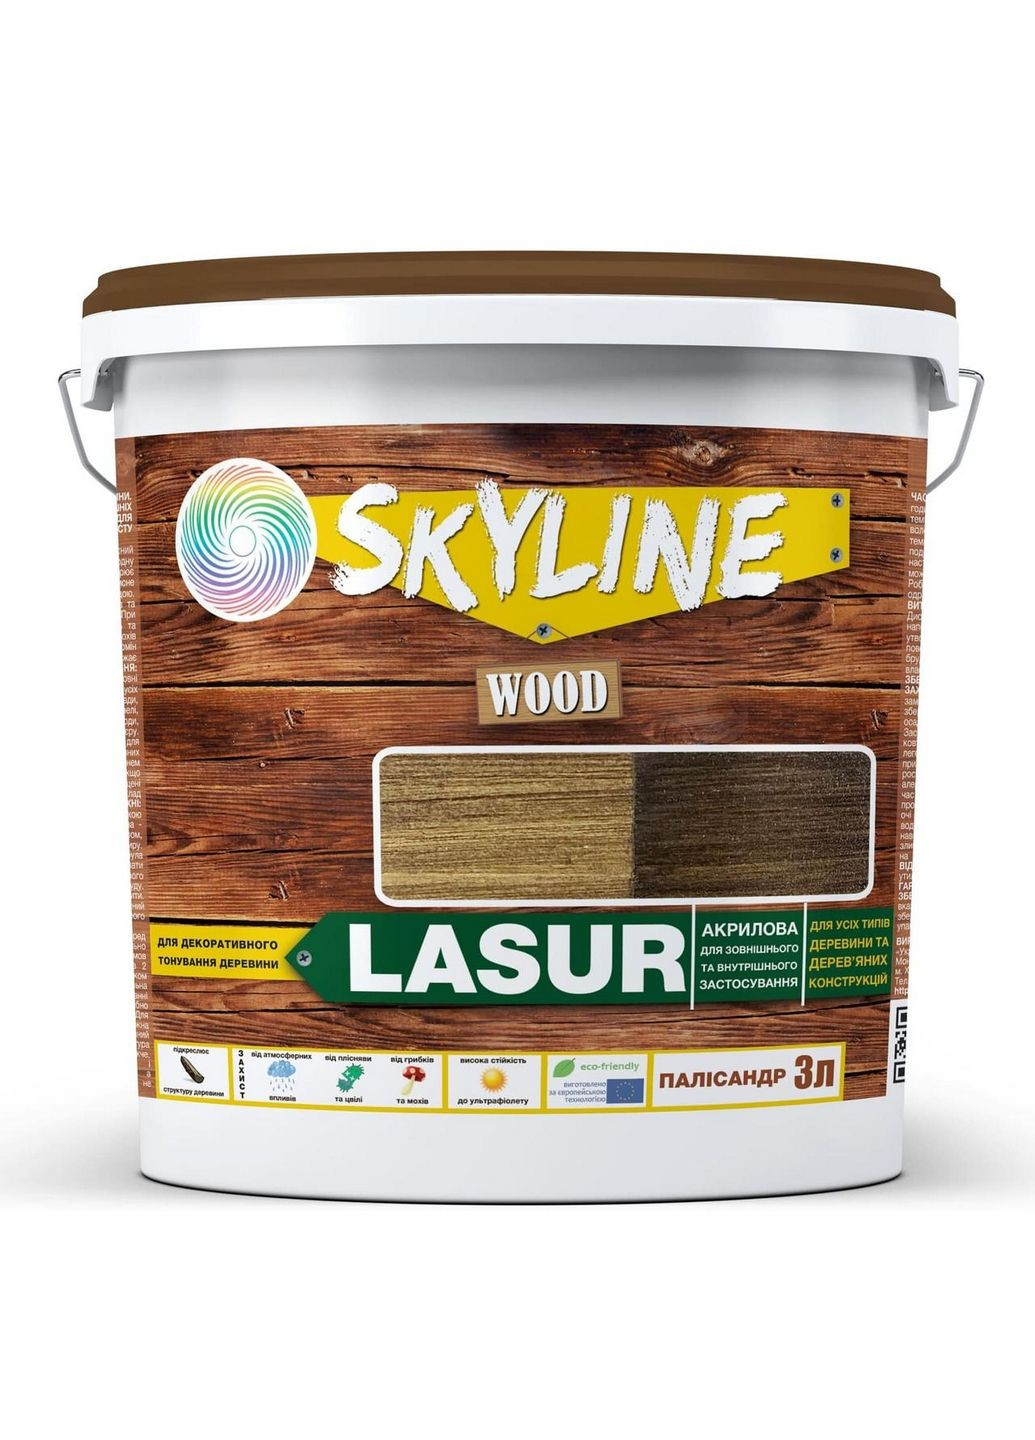 Лазурь декоративно-защитная для обработки дерева LASUR Wood 3 л SkyLine (289368651)